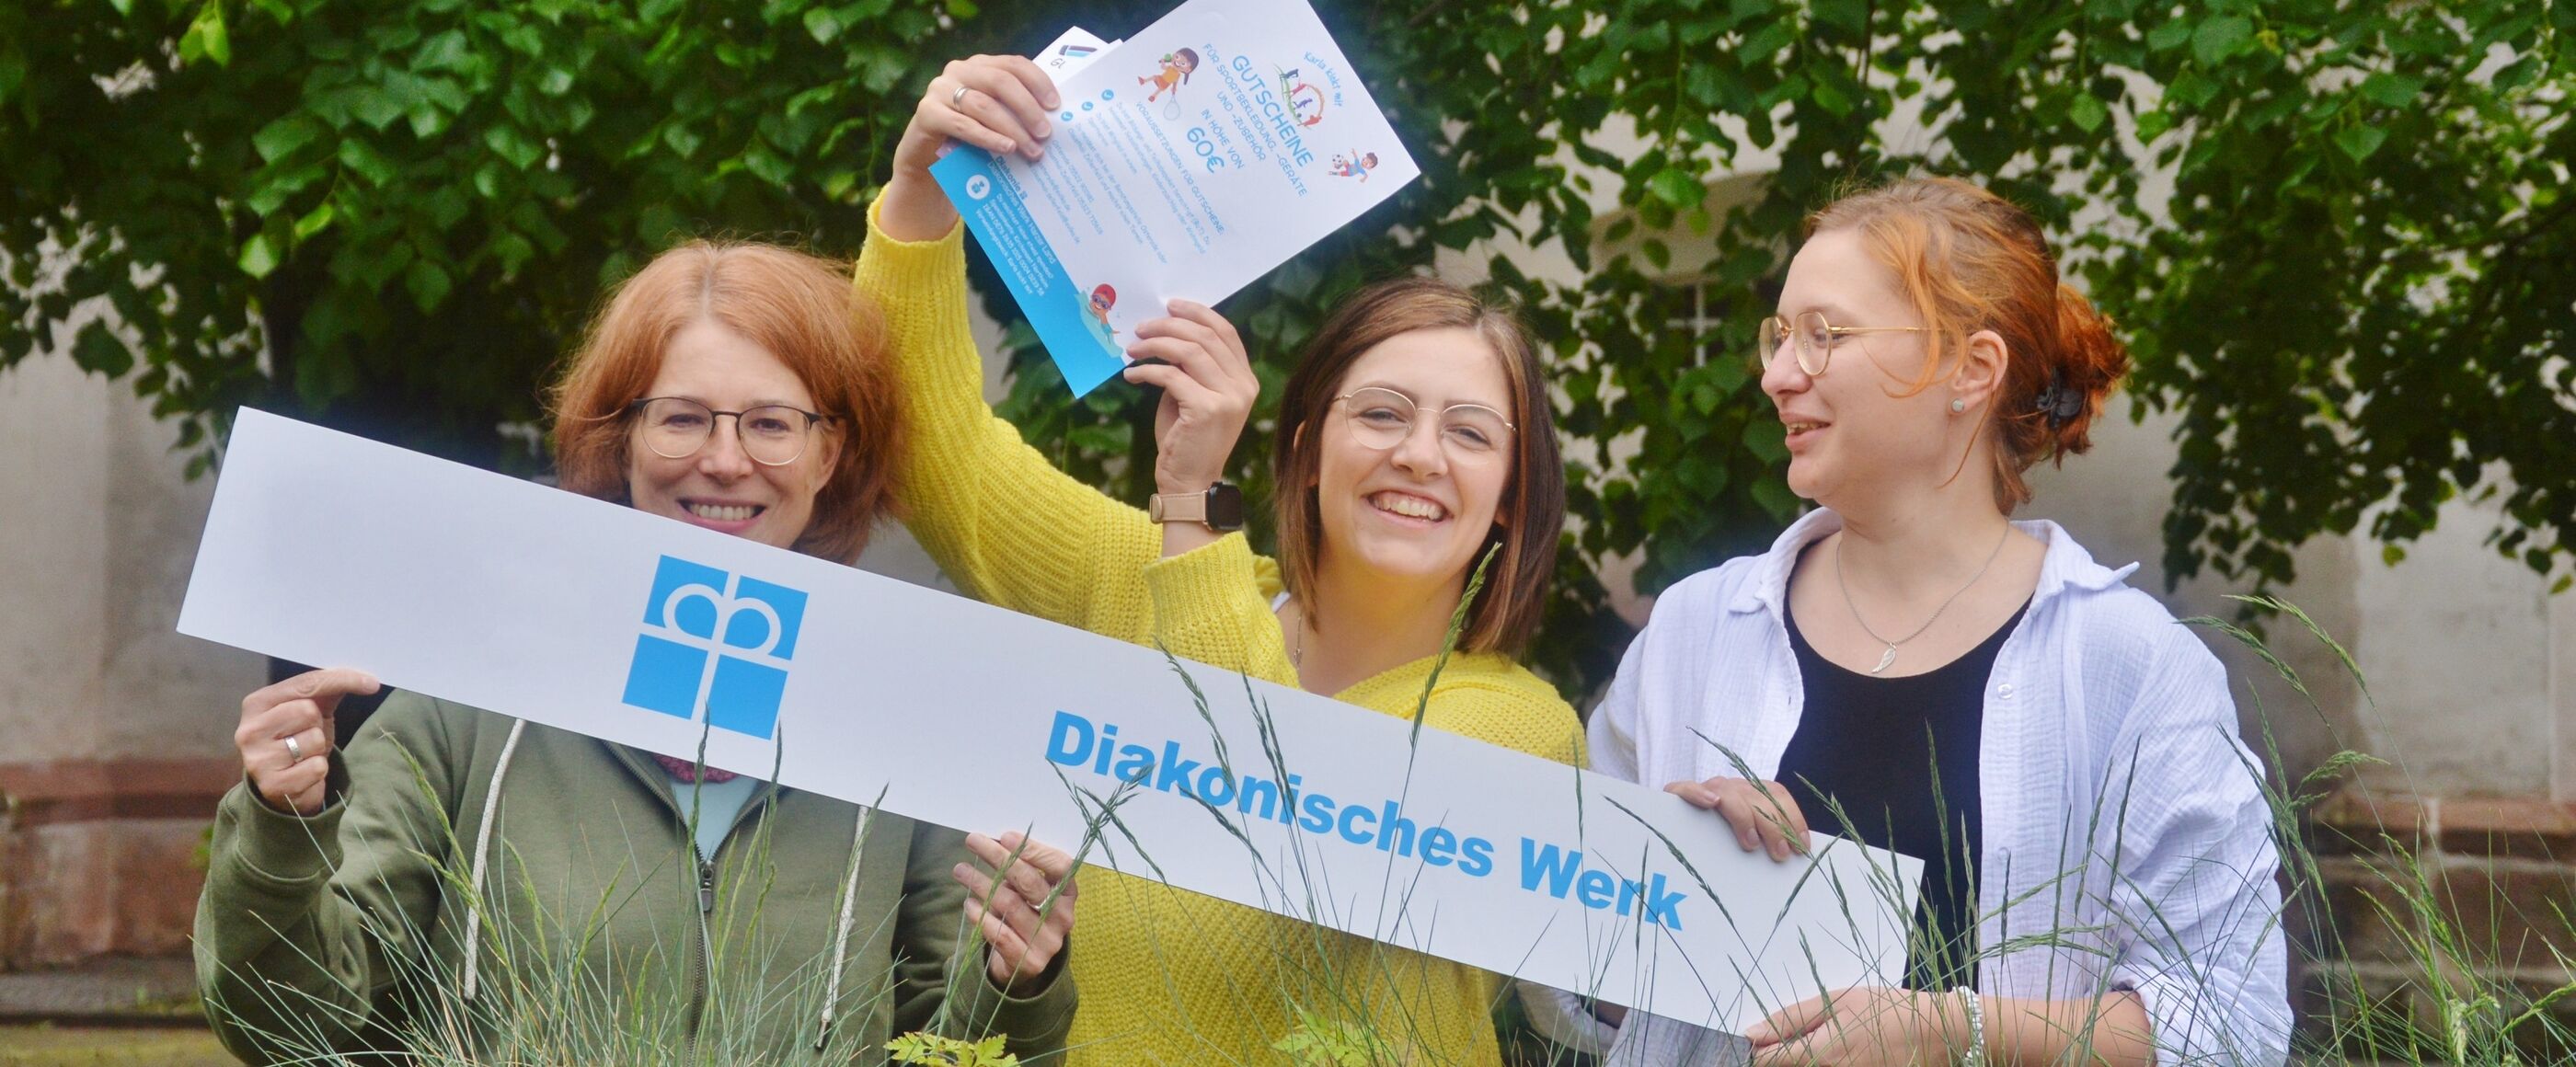 Ein Foto von drei weiblich gelesenen Personen, die in die Kamera lächeln. Sie halten ein weißes Banner mit blauer Schrift "Diakonisches Werk". Die mittlere Person hält eine Urkunde. Sie stehen im Grünen. 